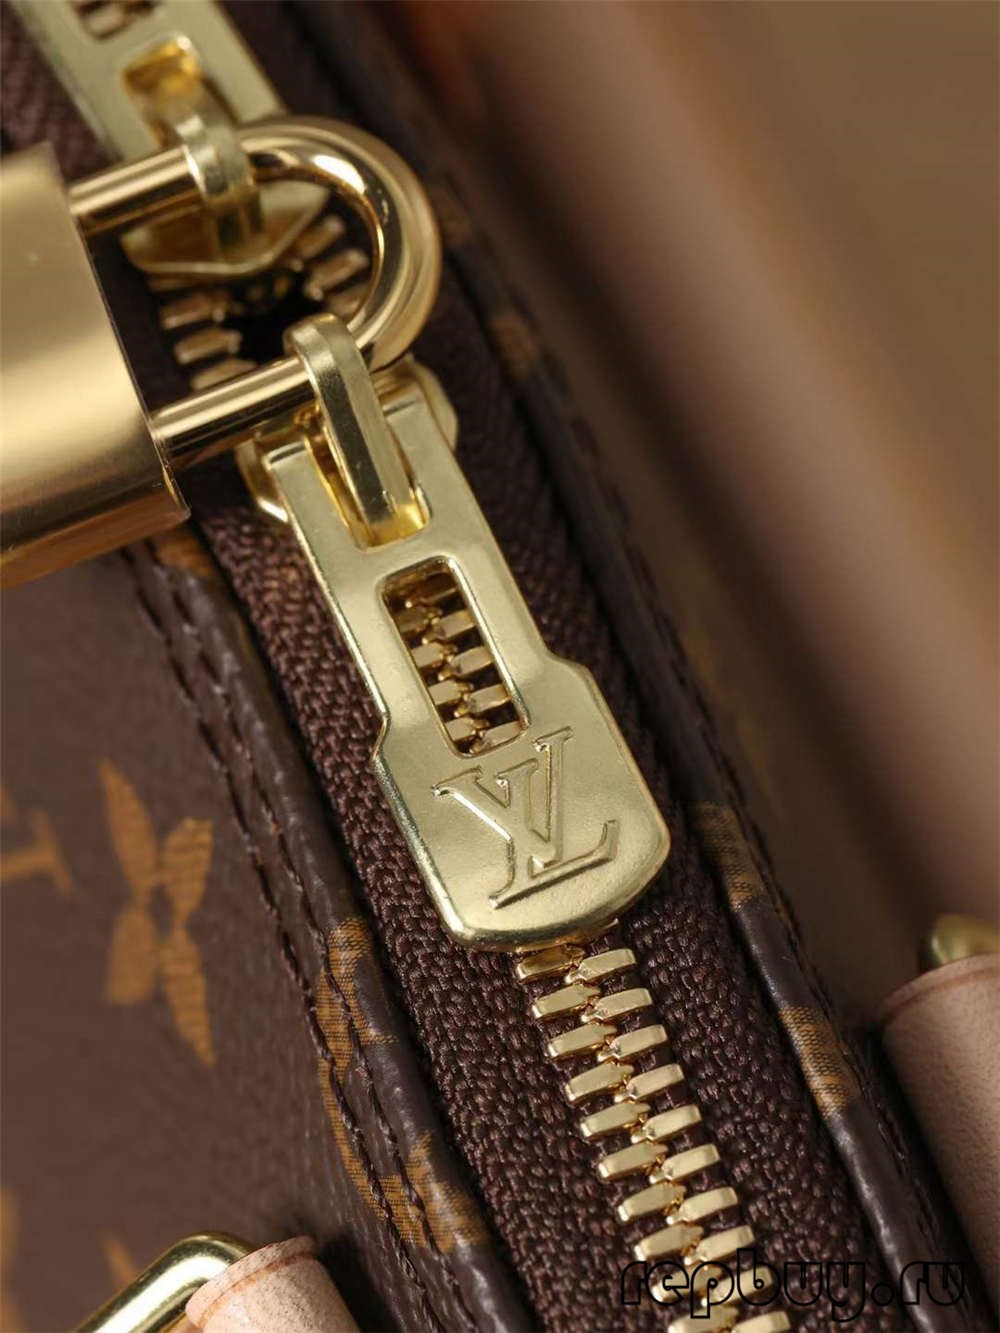 Louis Vuitton M53152 Alma BB top quality replica bags (2022 Latest)-Best Quality Fo Louis Vuitton Bag Online Store, Replica designer bag ru